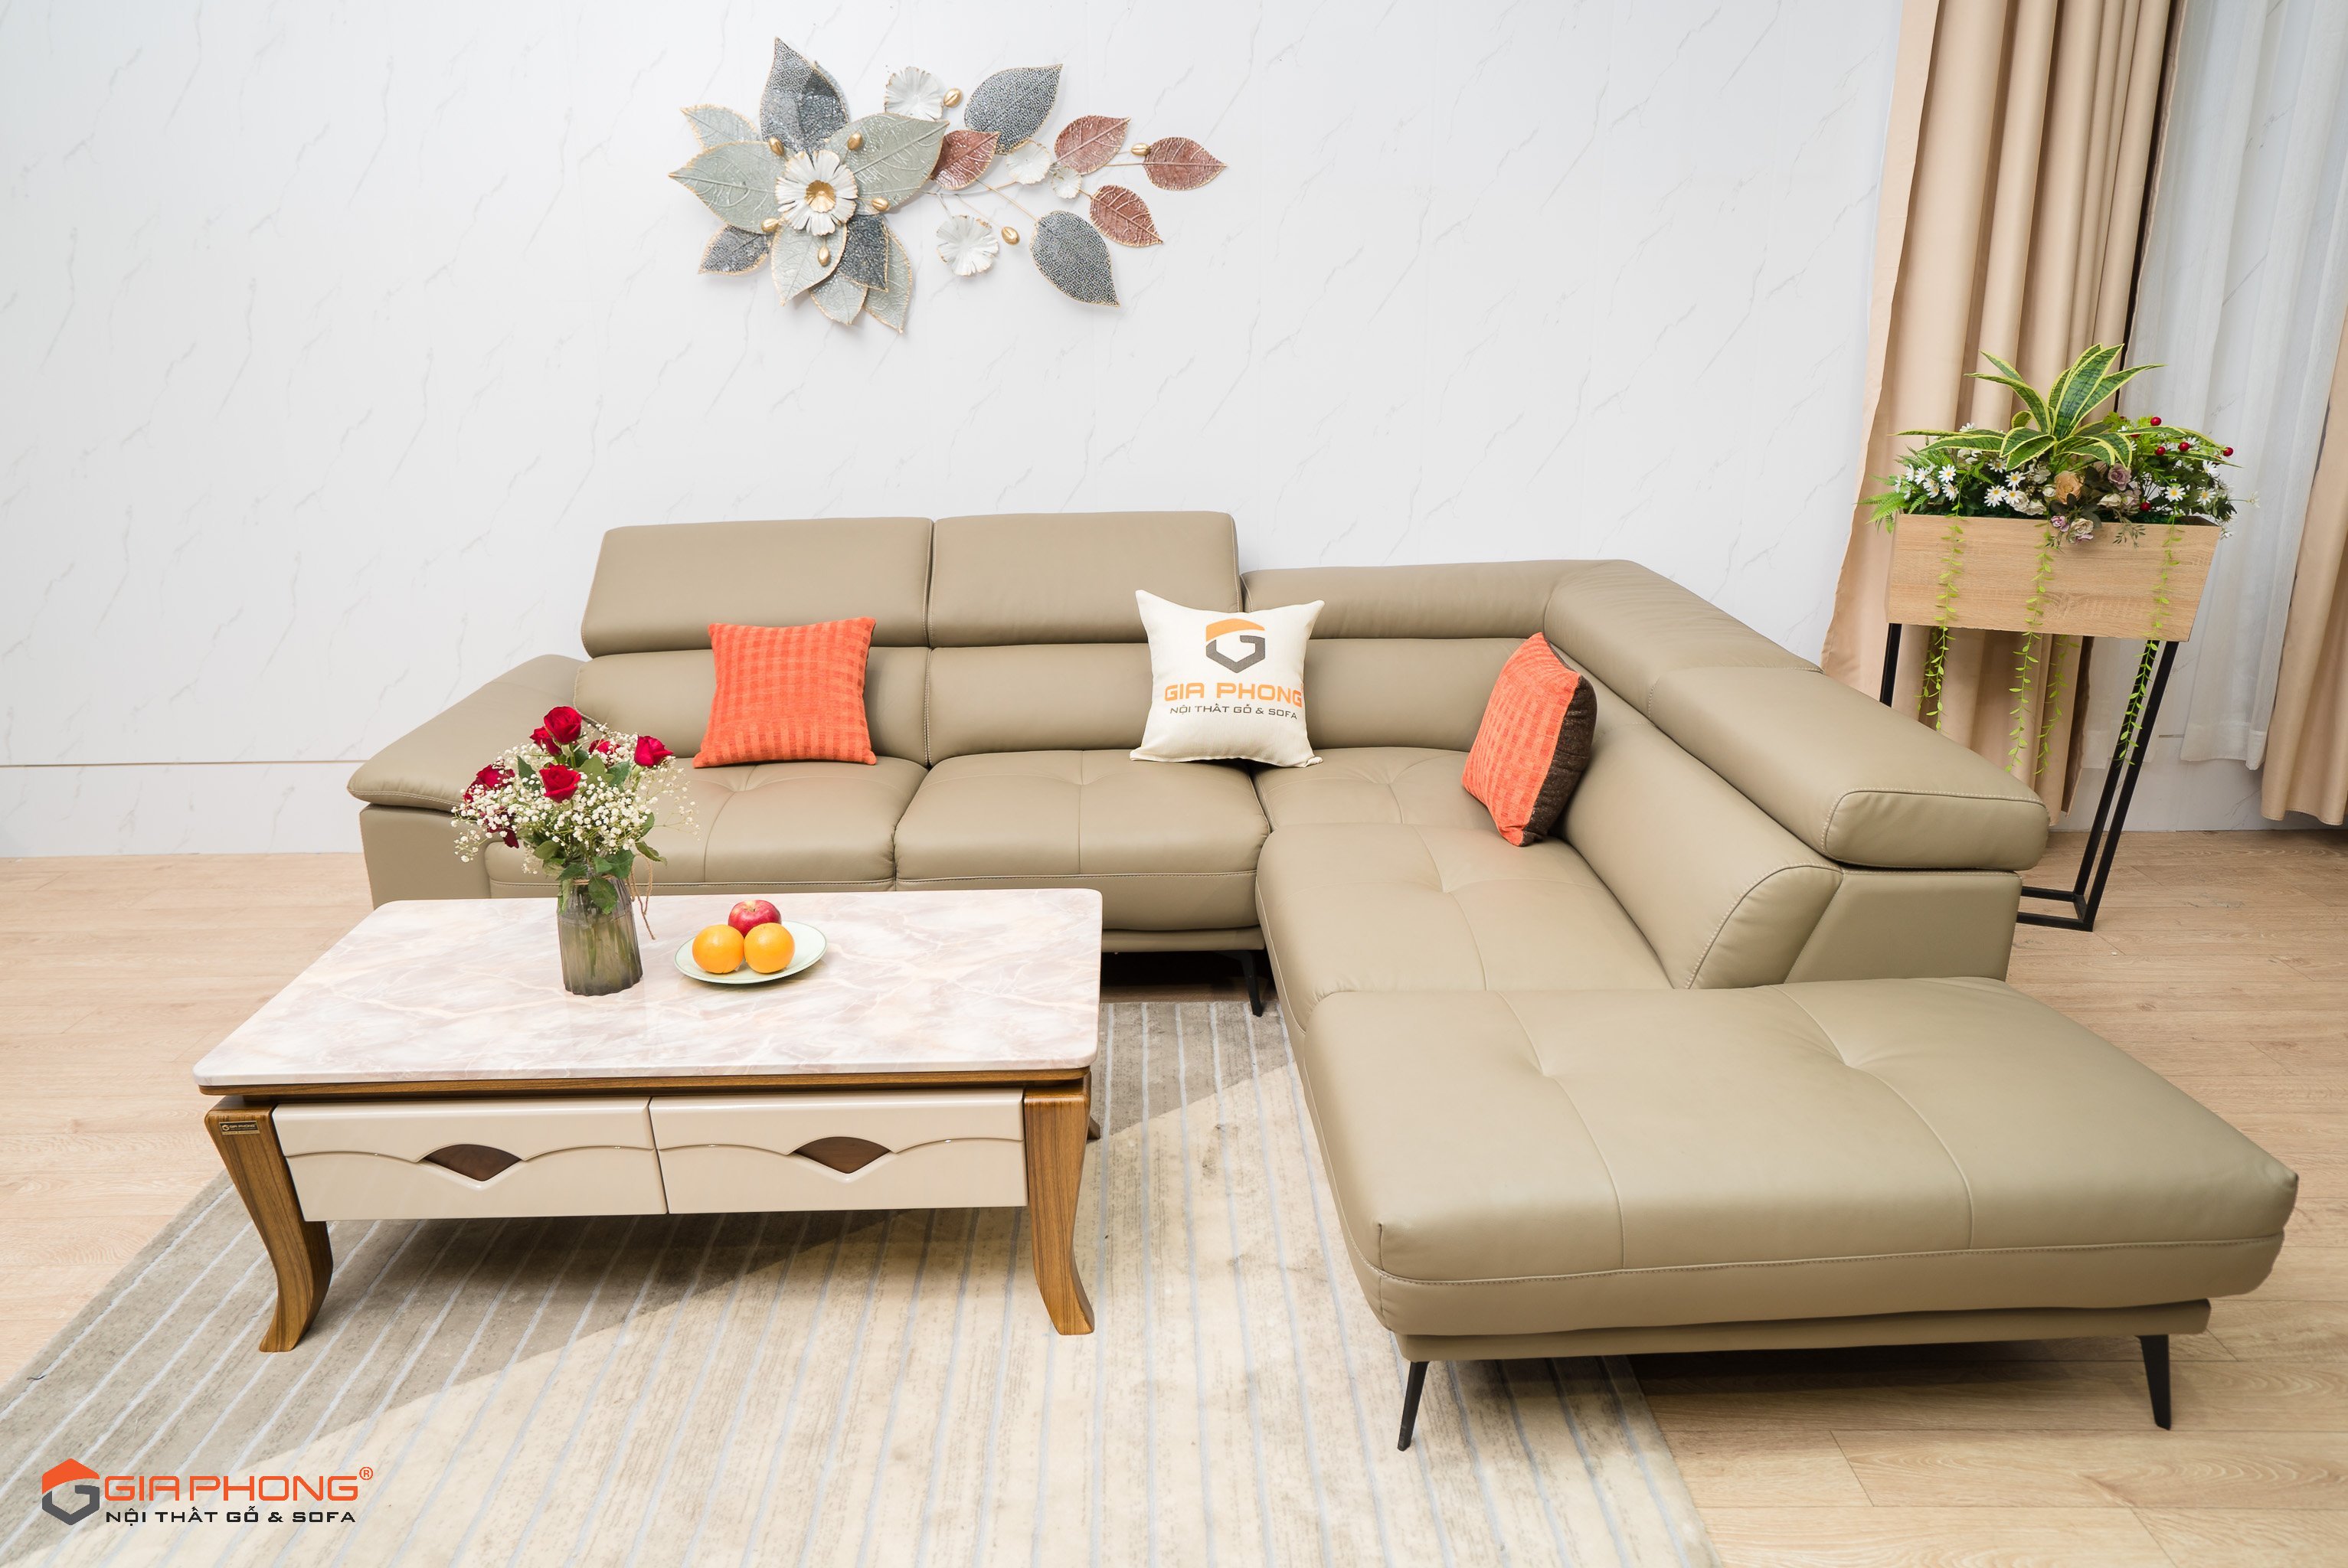 Sofa: Bạn đang tìm kiếm một chiếc sofa đẹp và thoải mái để trang trí phòng khách của mình? Hãy đến với chúng tôi, chúng tôi có nhiều loại sofa đa dạng, sang trọng, đảm bảo sẽ làm hài lòng mọi khách hàng khó tính.